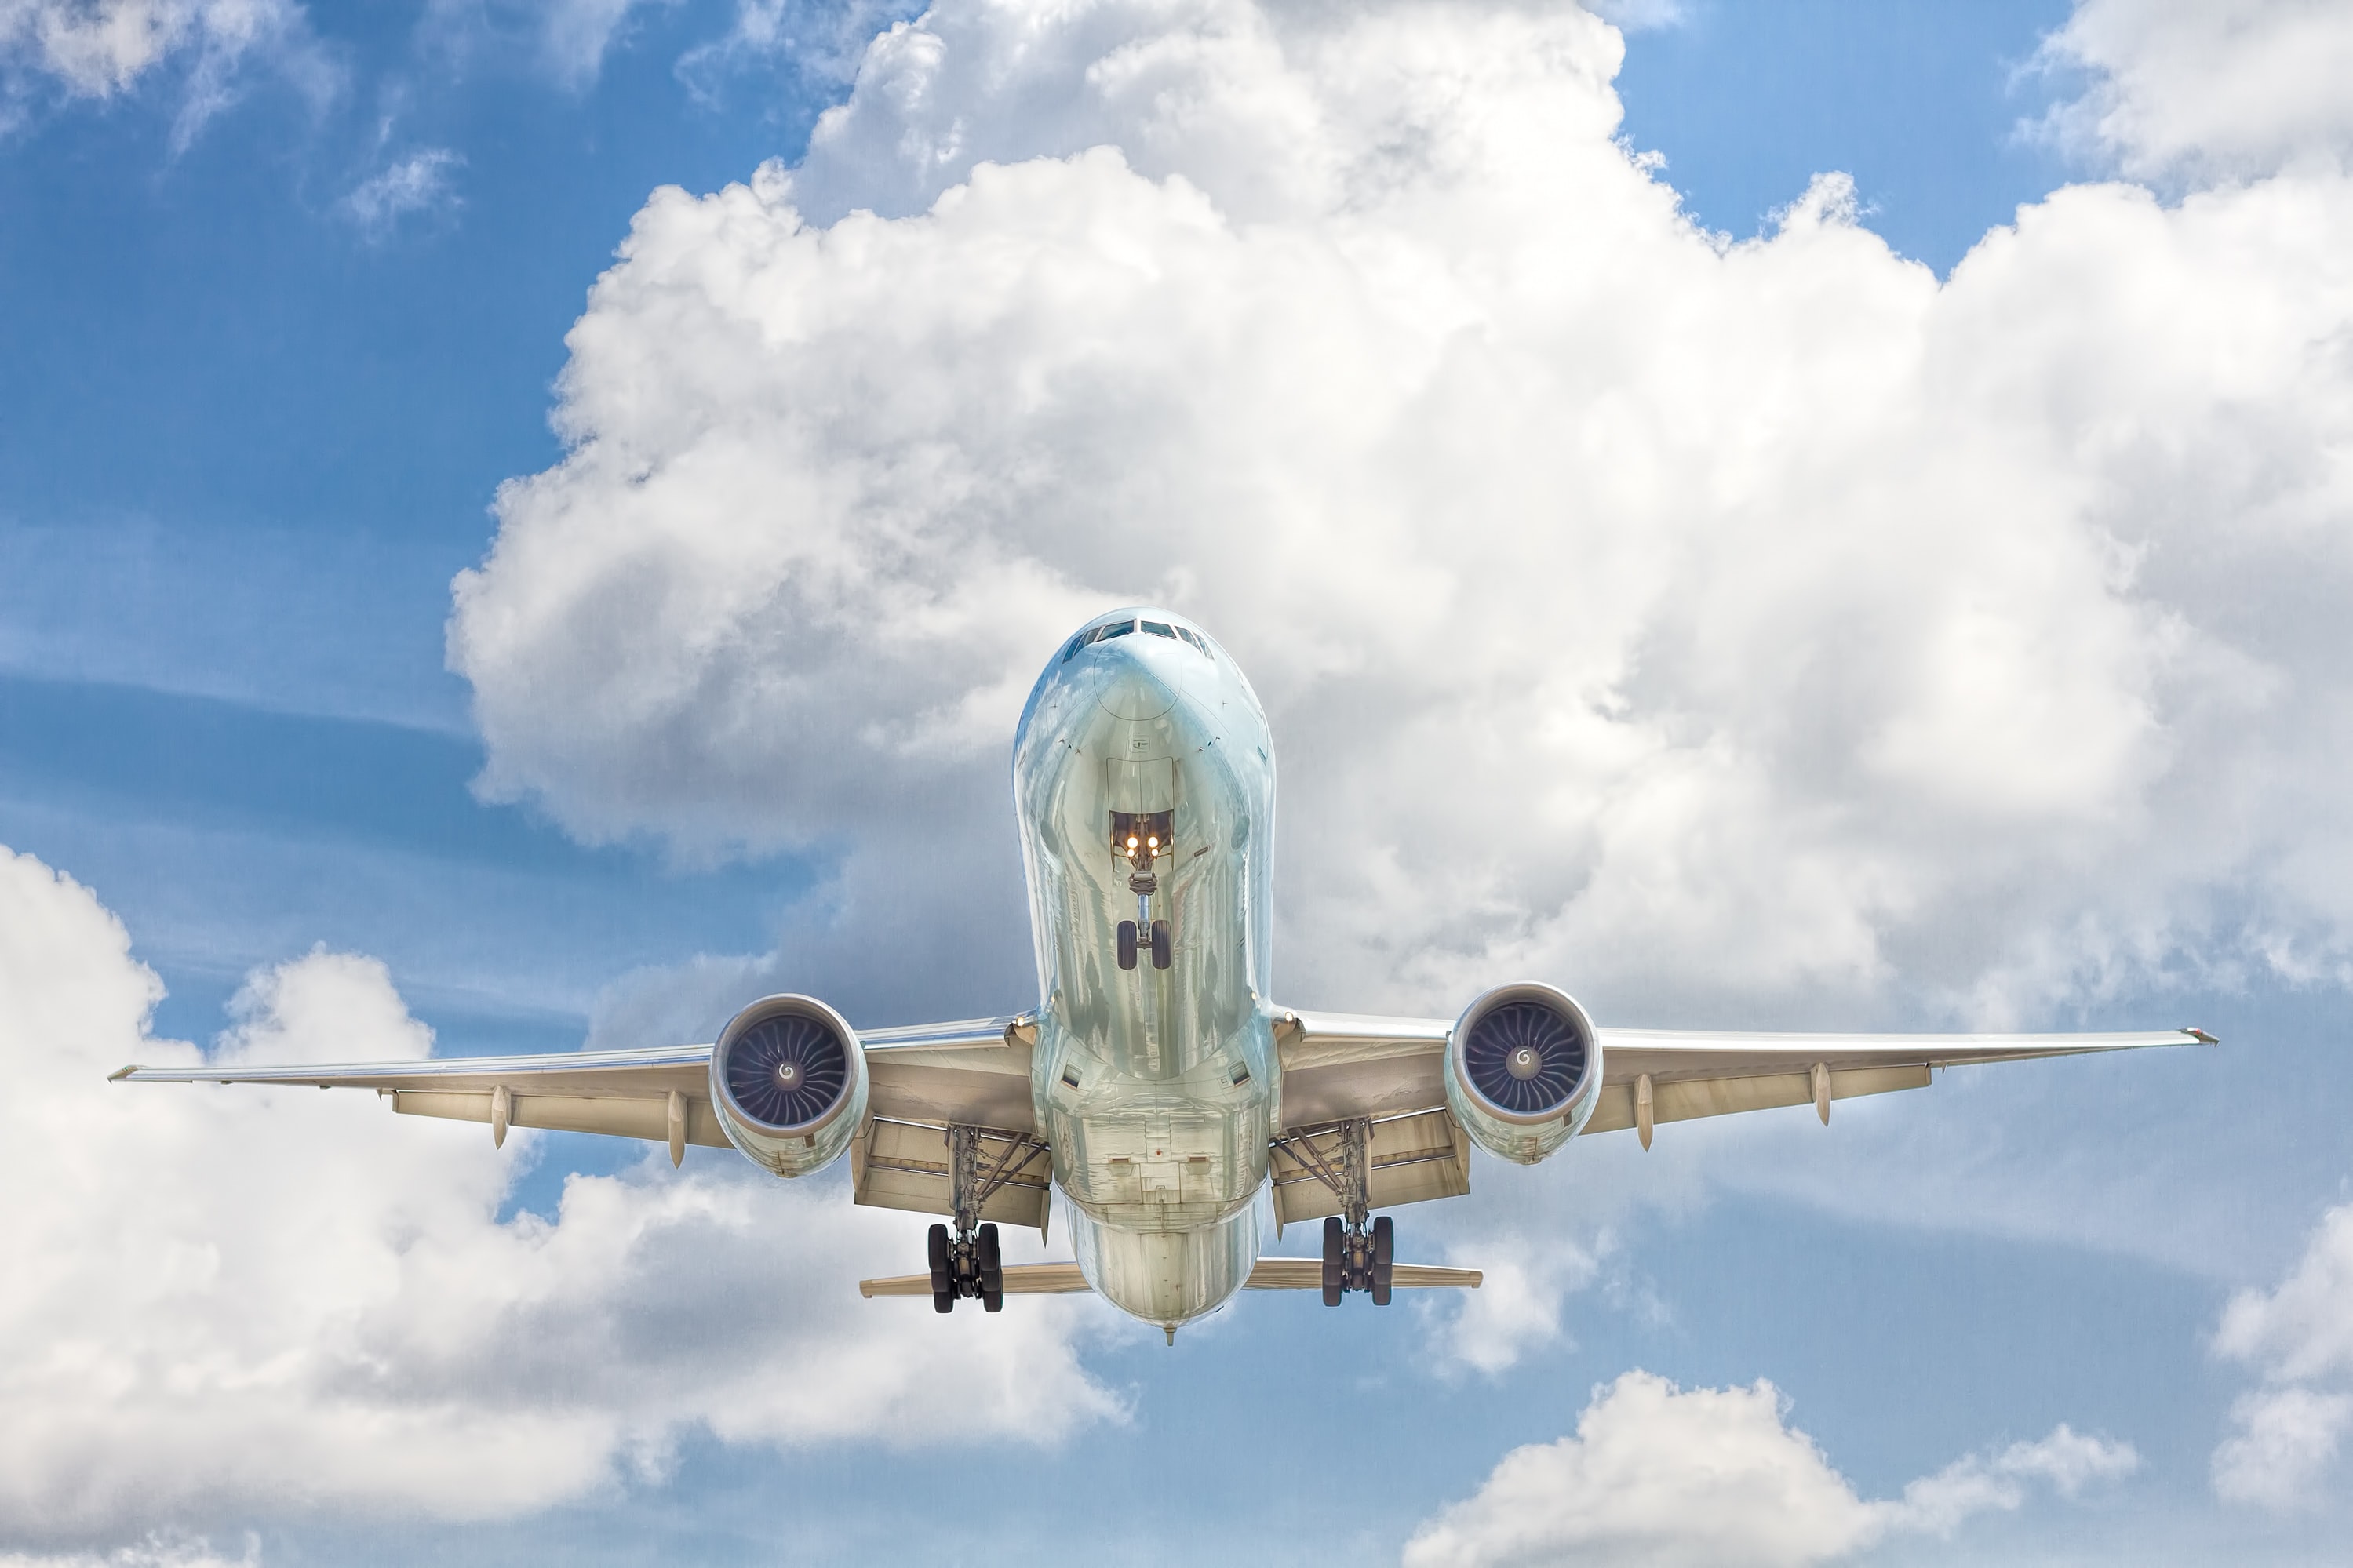 La Comisión Federal de Competencia Económica expresa inquietudes sobre propuesta de reforma al marco regulatorio de aviación del Ejecutivo Federal